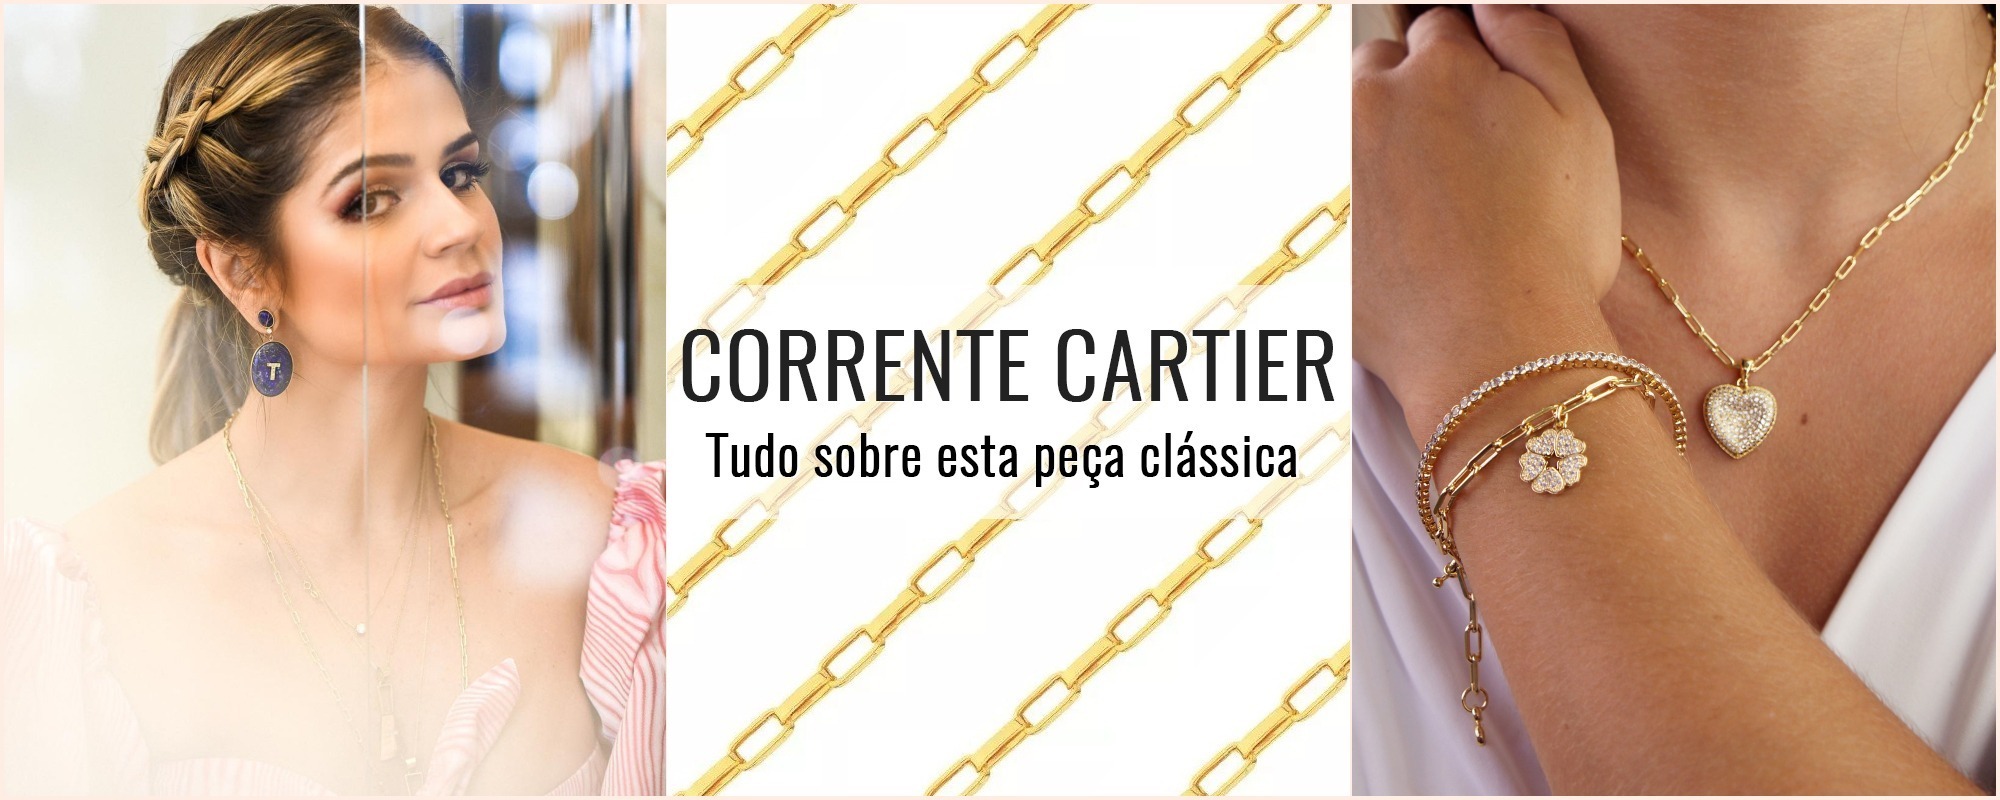 Corrente Cartier – Tudo sobre esta peça clássica